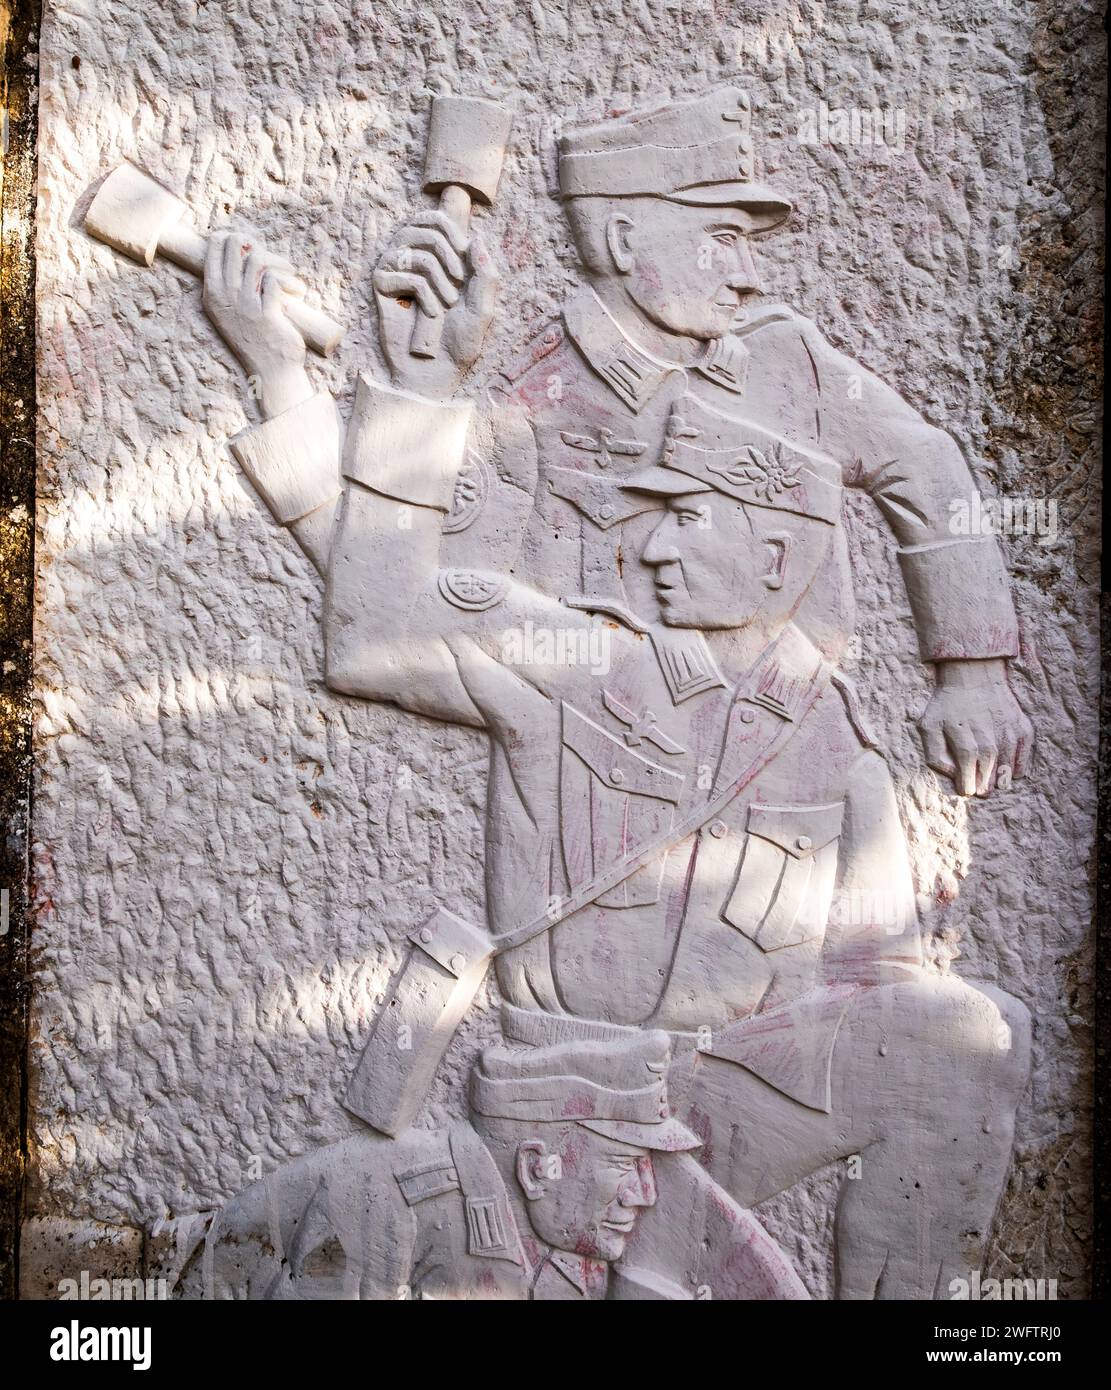 Mémorial controversé de l'ère nazie allemande récemment rénové par des membres d'une association allemande dans le village de montagne de Floria, en Crète Banque D'Images